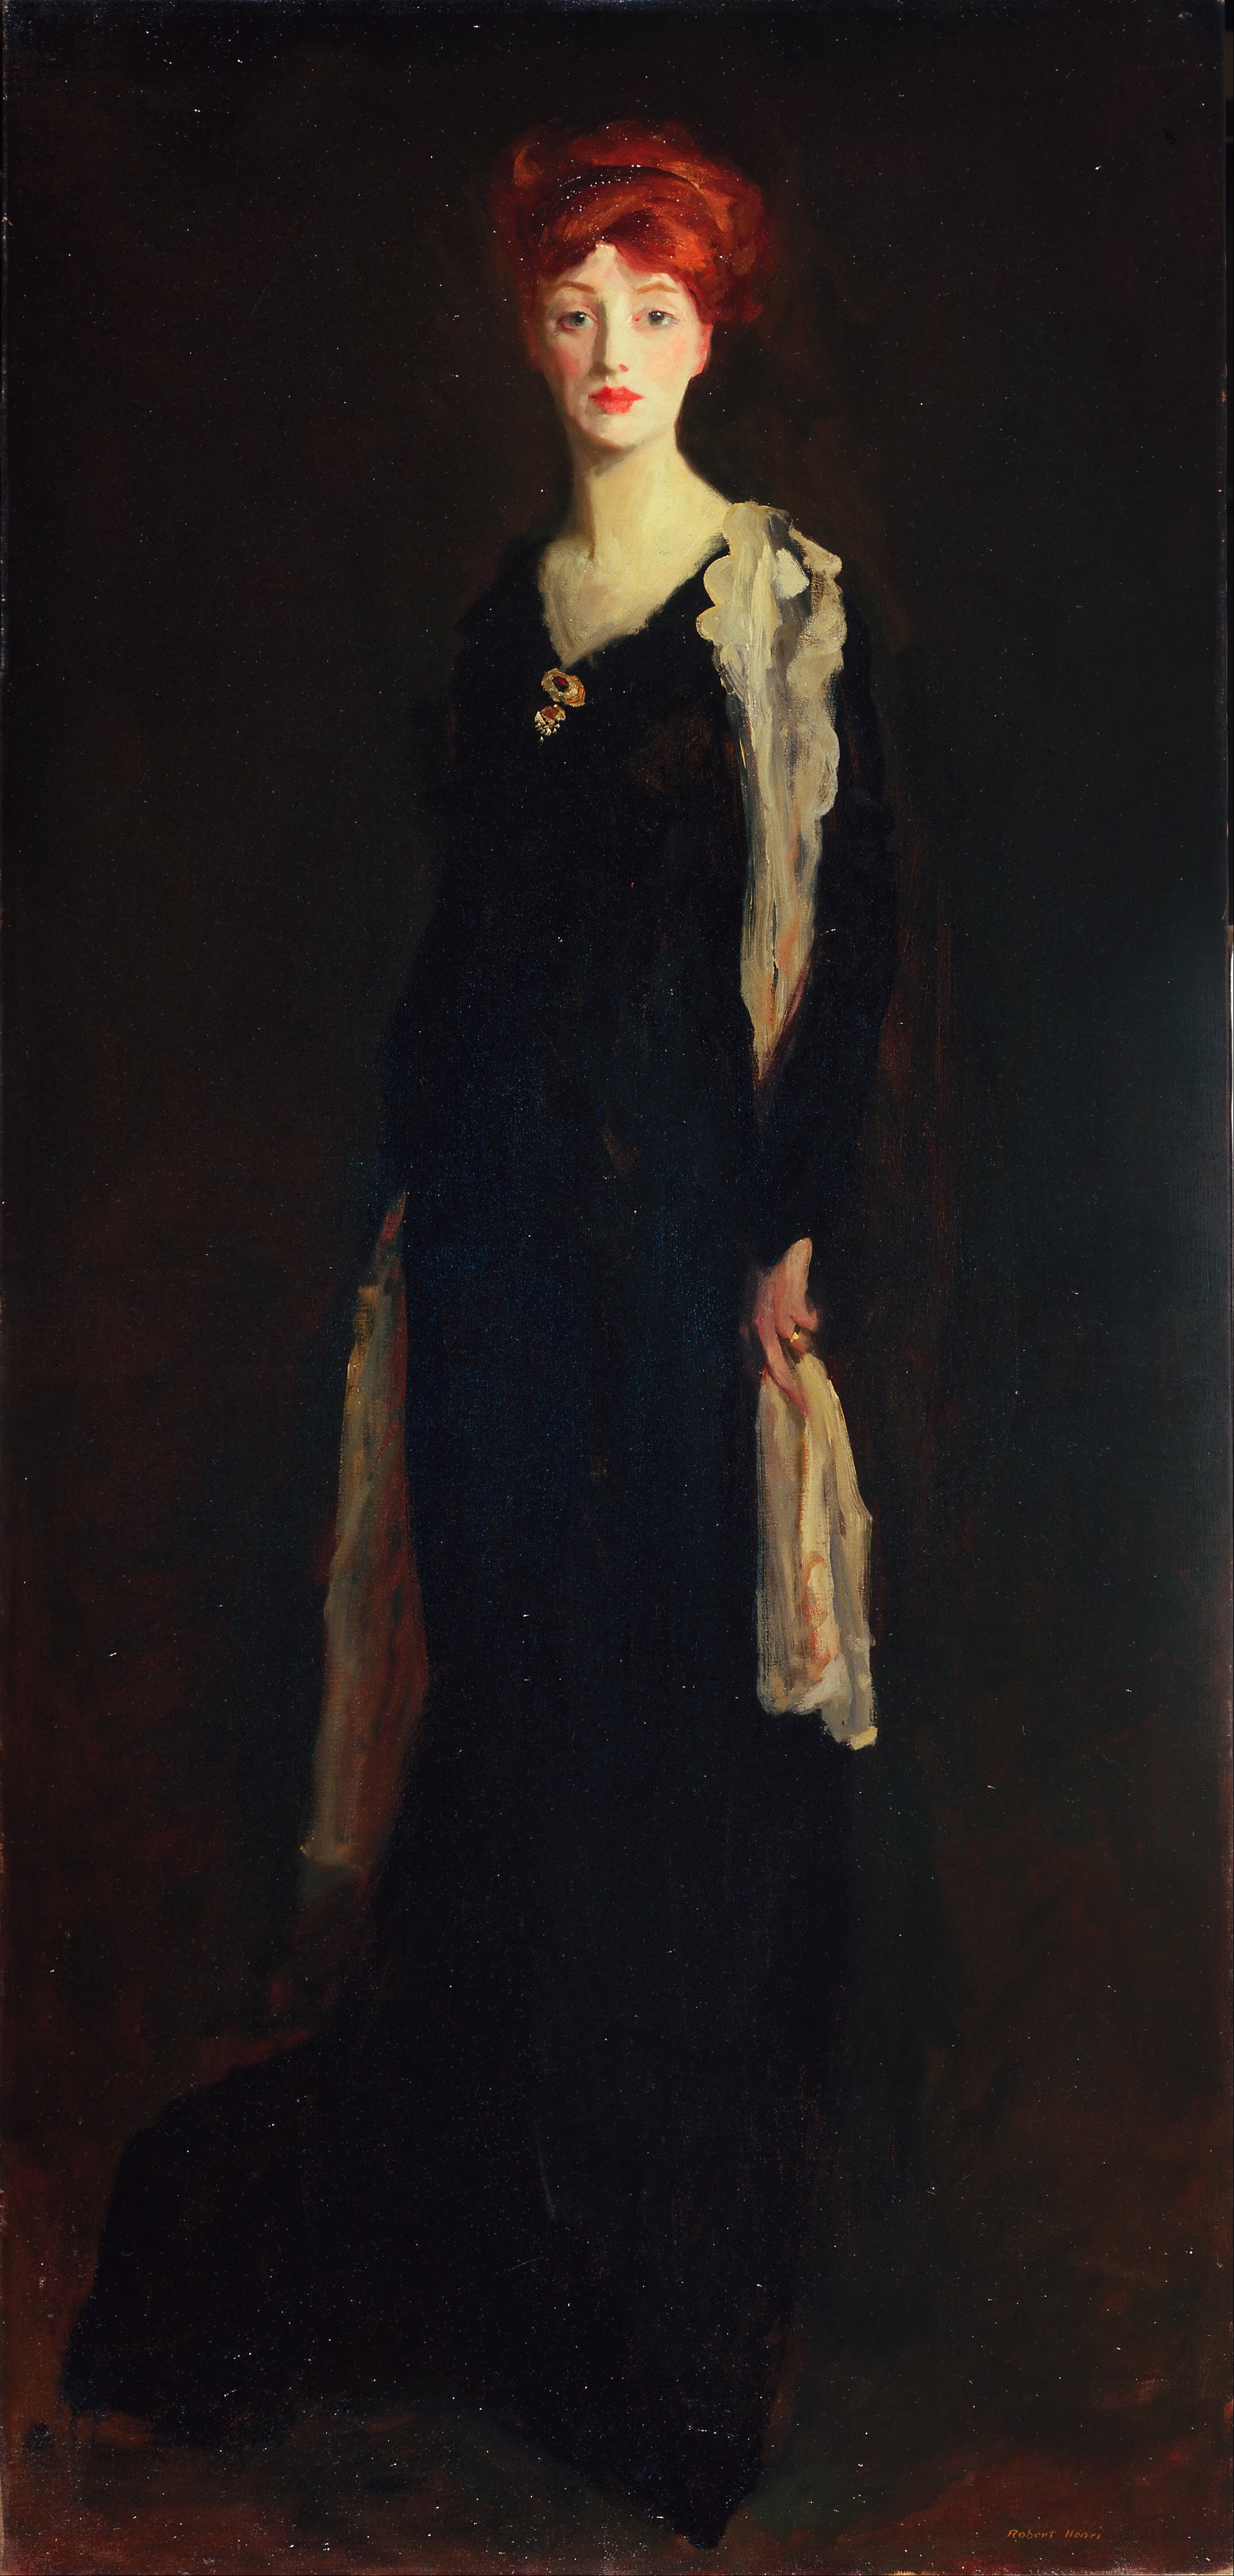 Pani w czerni z hiszpańskim szalikiem (O w czerni z szalikiem) by Robert Henri - 1910 - 196.2 x 94 cm 